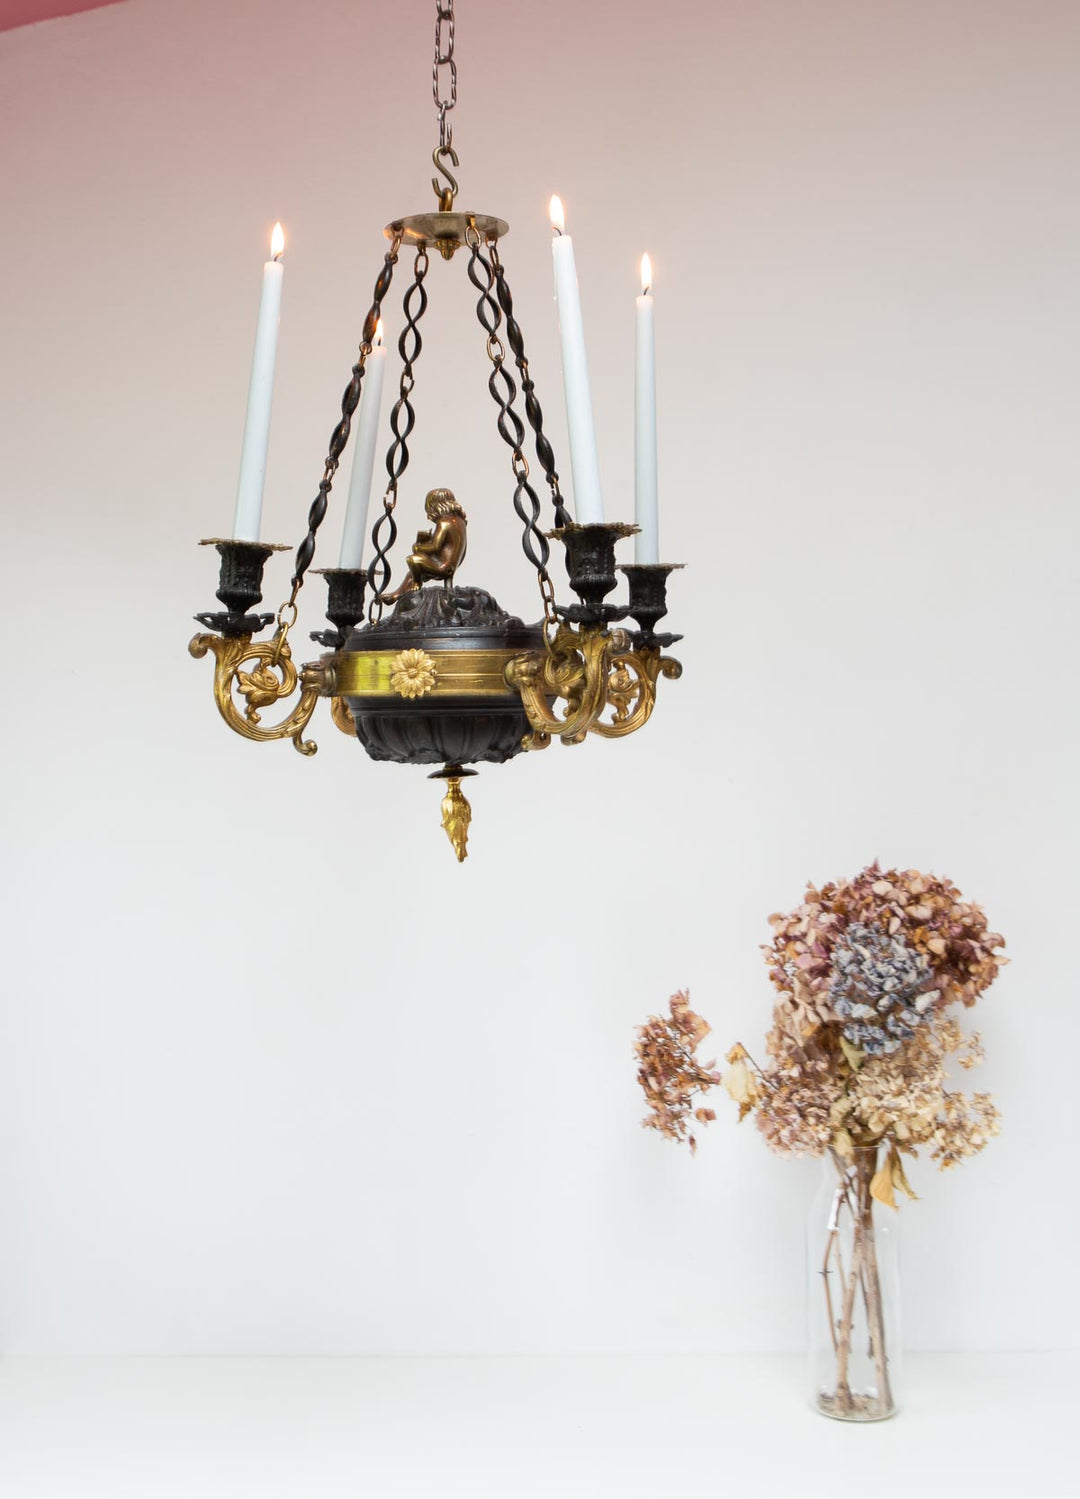 Candelabro techo sueco Imperio s. XIX 4 velas swedish candelabra